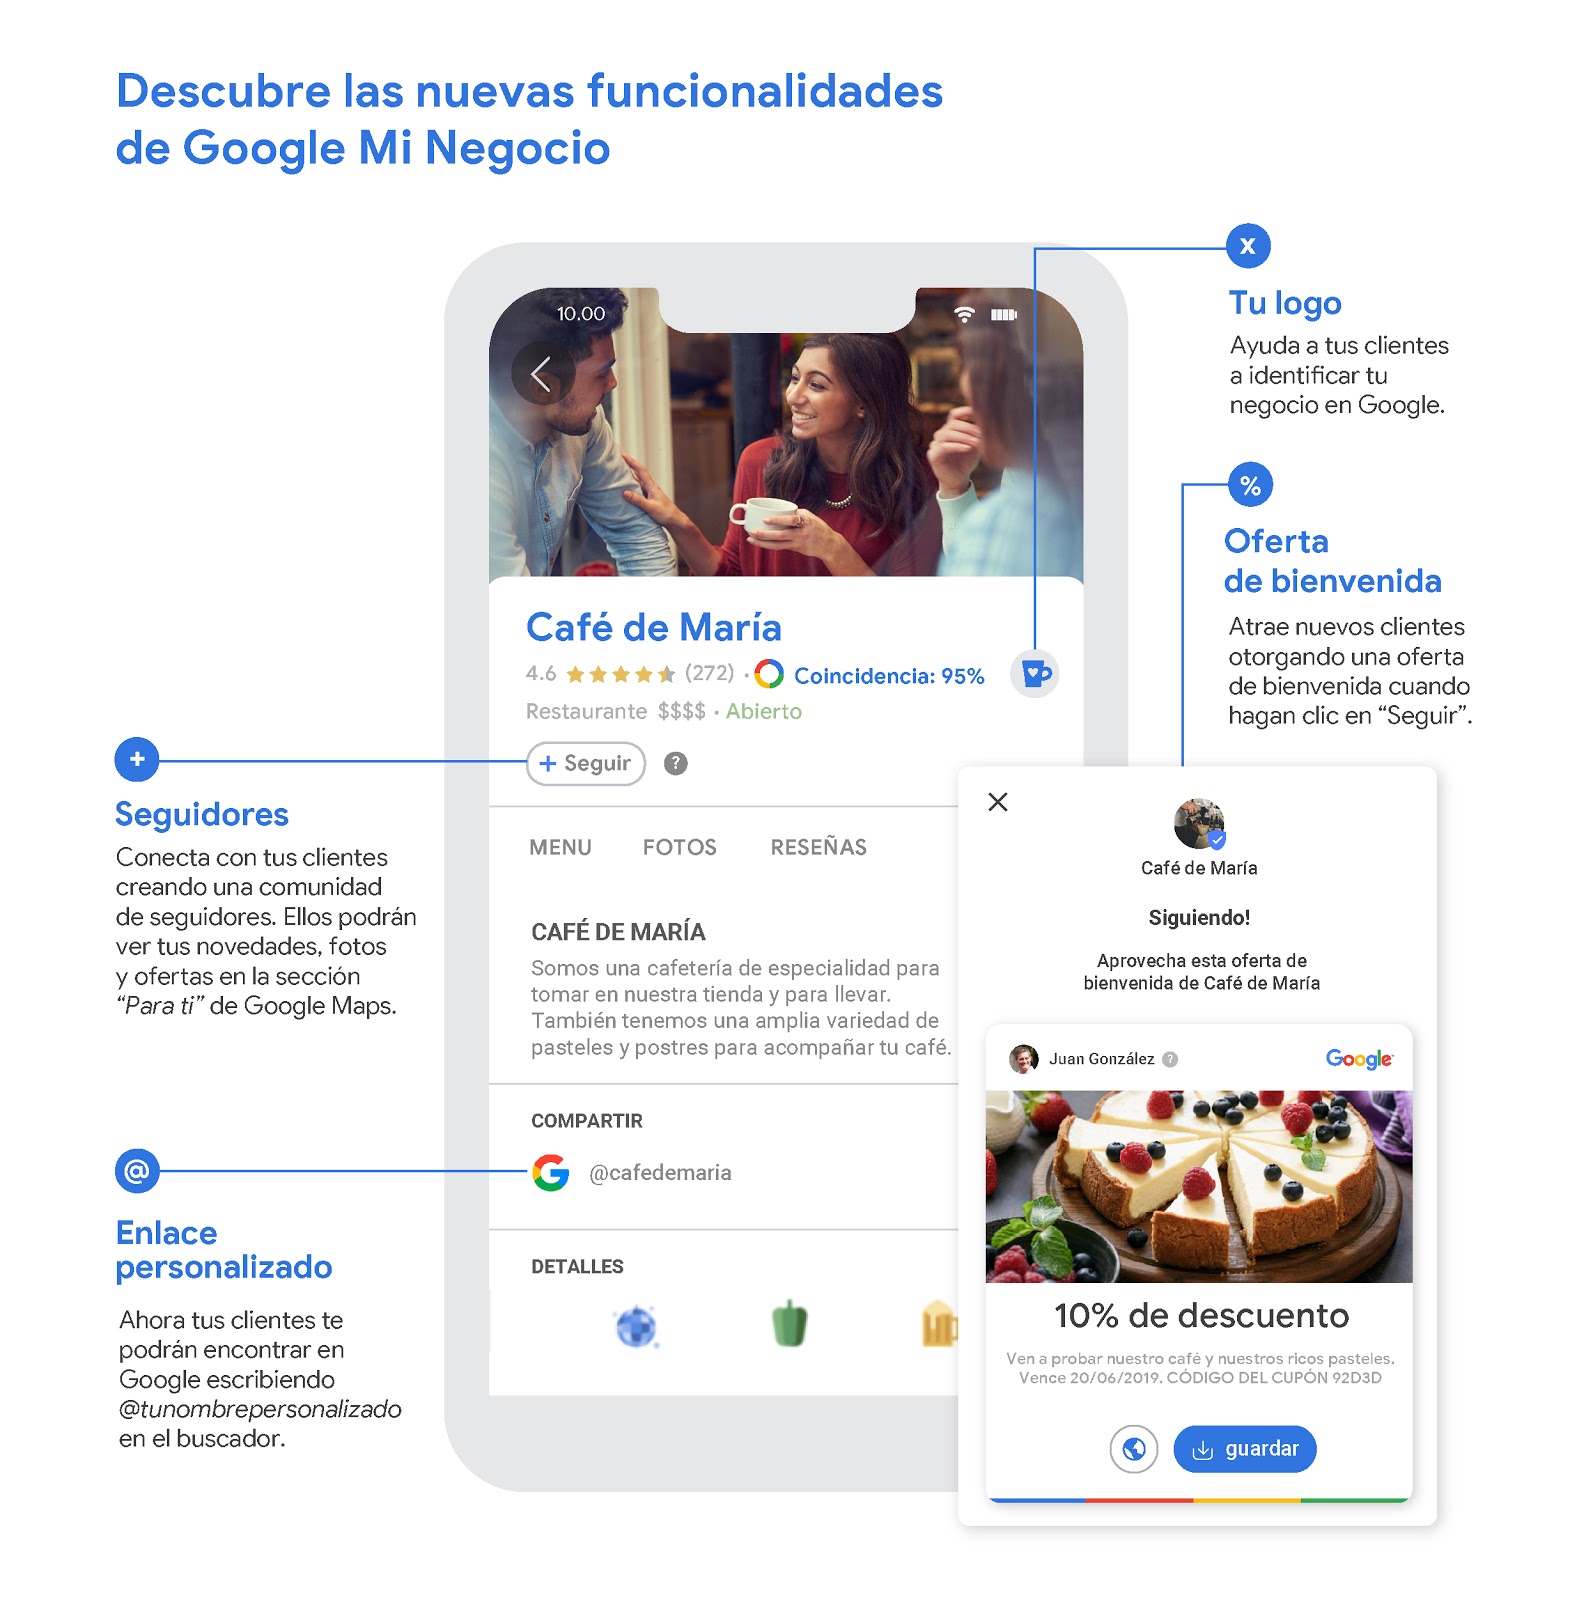 Google México presenta dos nuevas funcionalidades para Google Mi Negocio: Perfiles personalizados y comunidad de seguidores | Marketing 4 Ecommerce